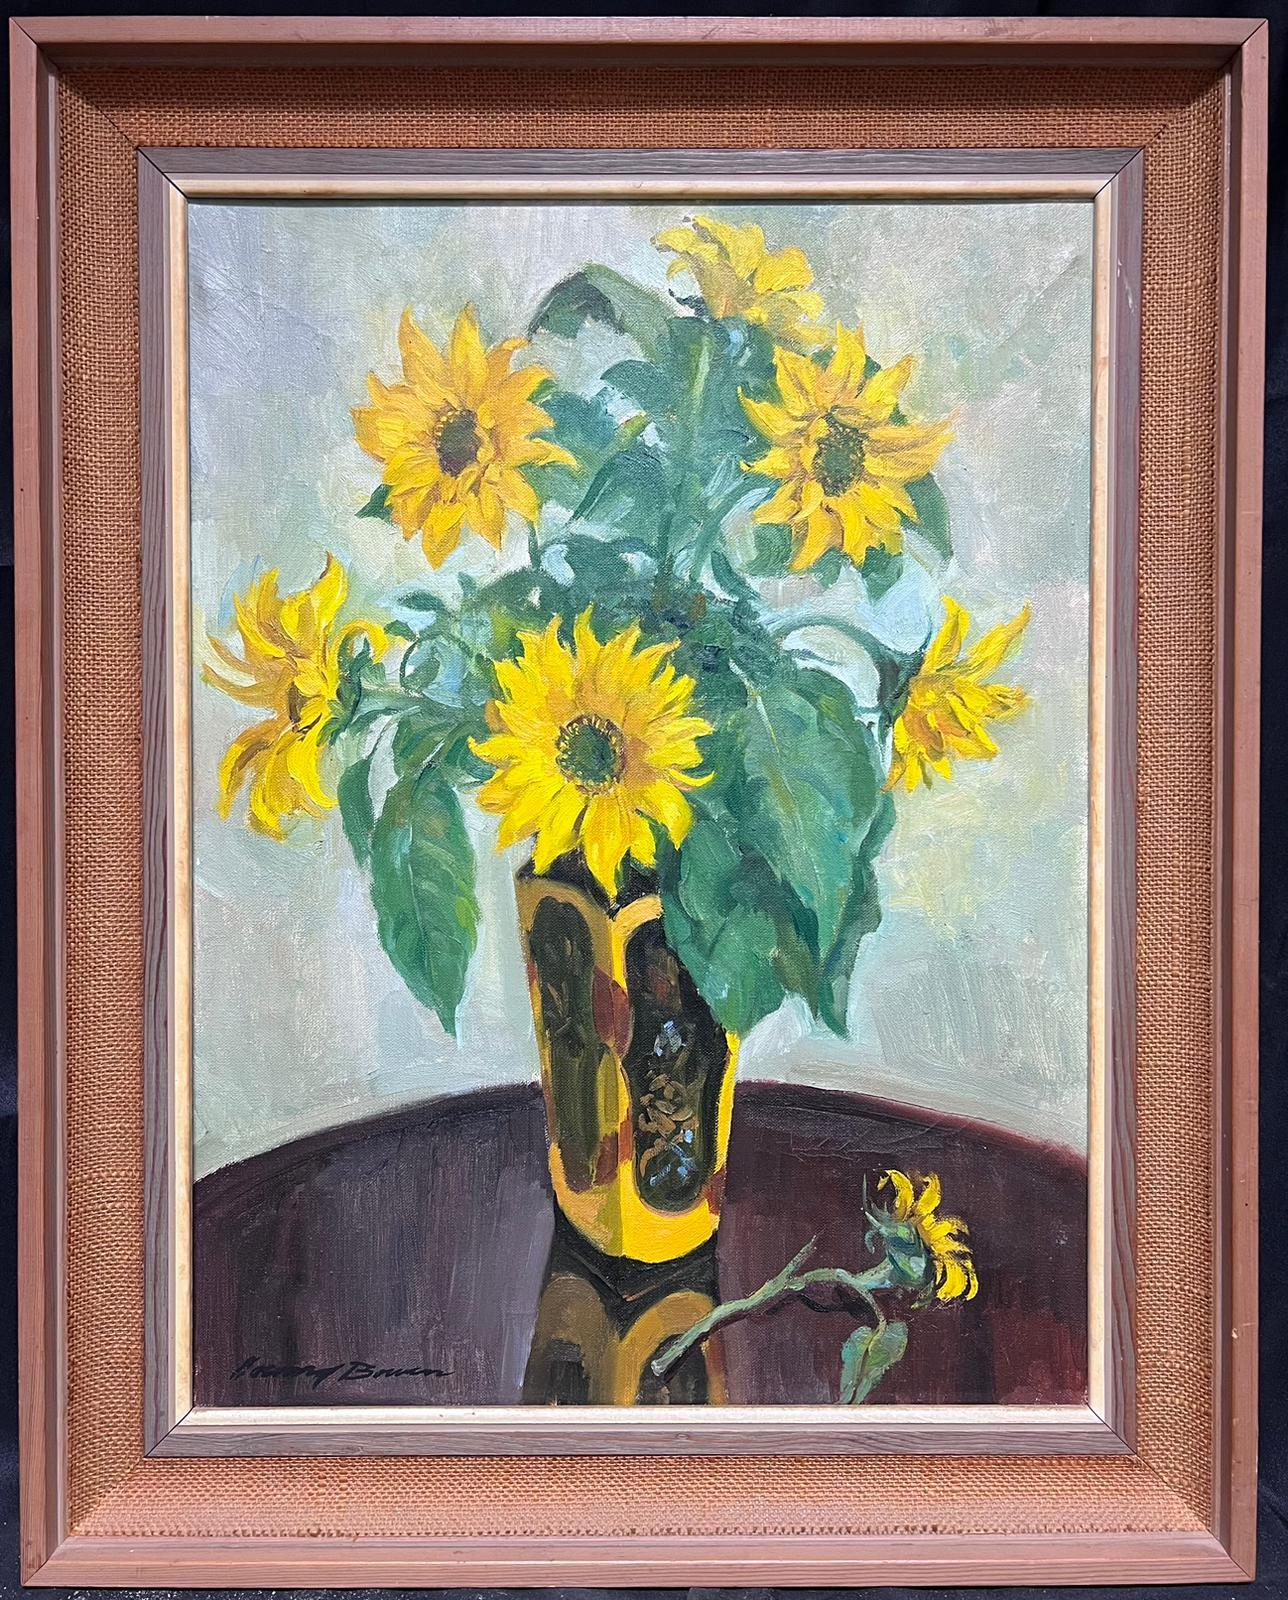 Mid 20th Century English Impressionist Still-Life Painting – Sonnenblumen in Vase 1950er Jahre English Impressionist Signiertes Ölgemälde auf Leinwand